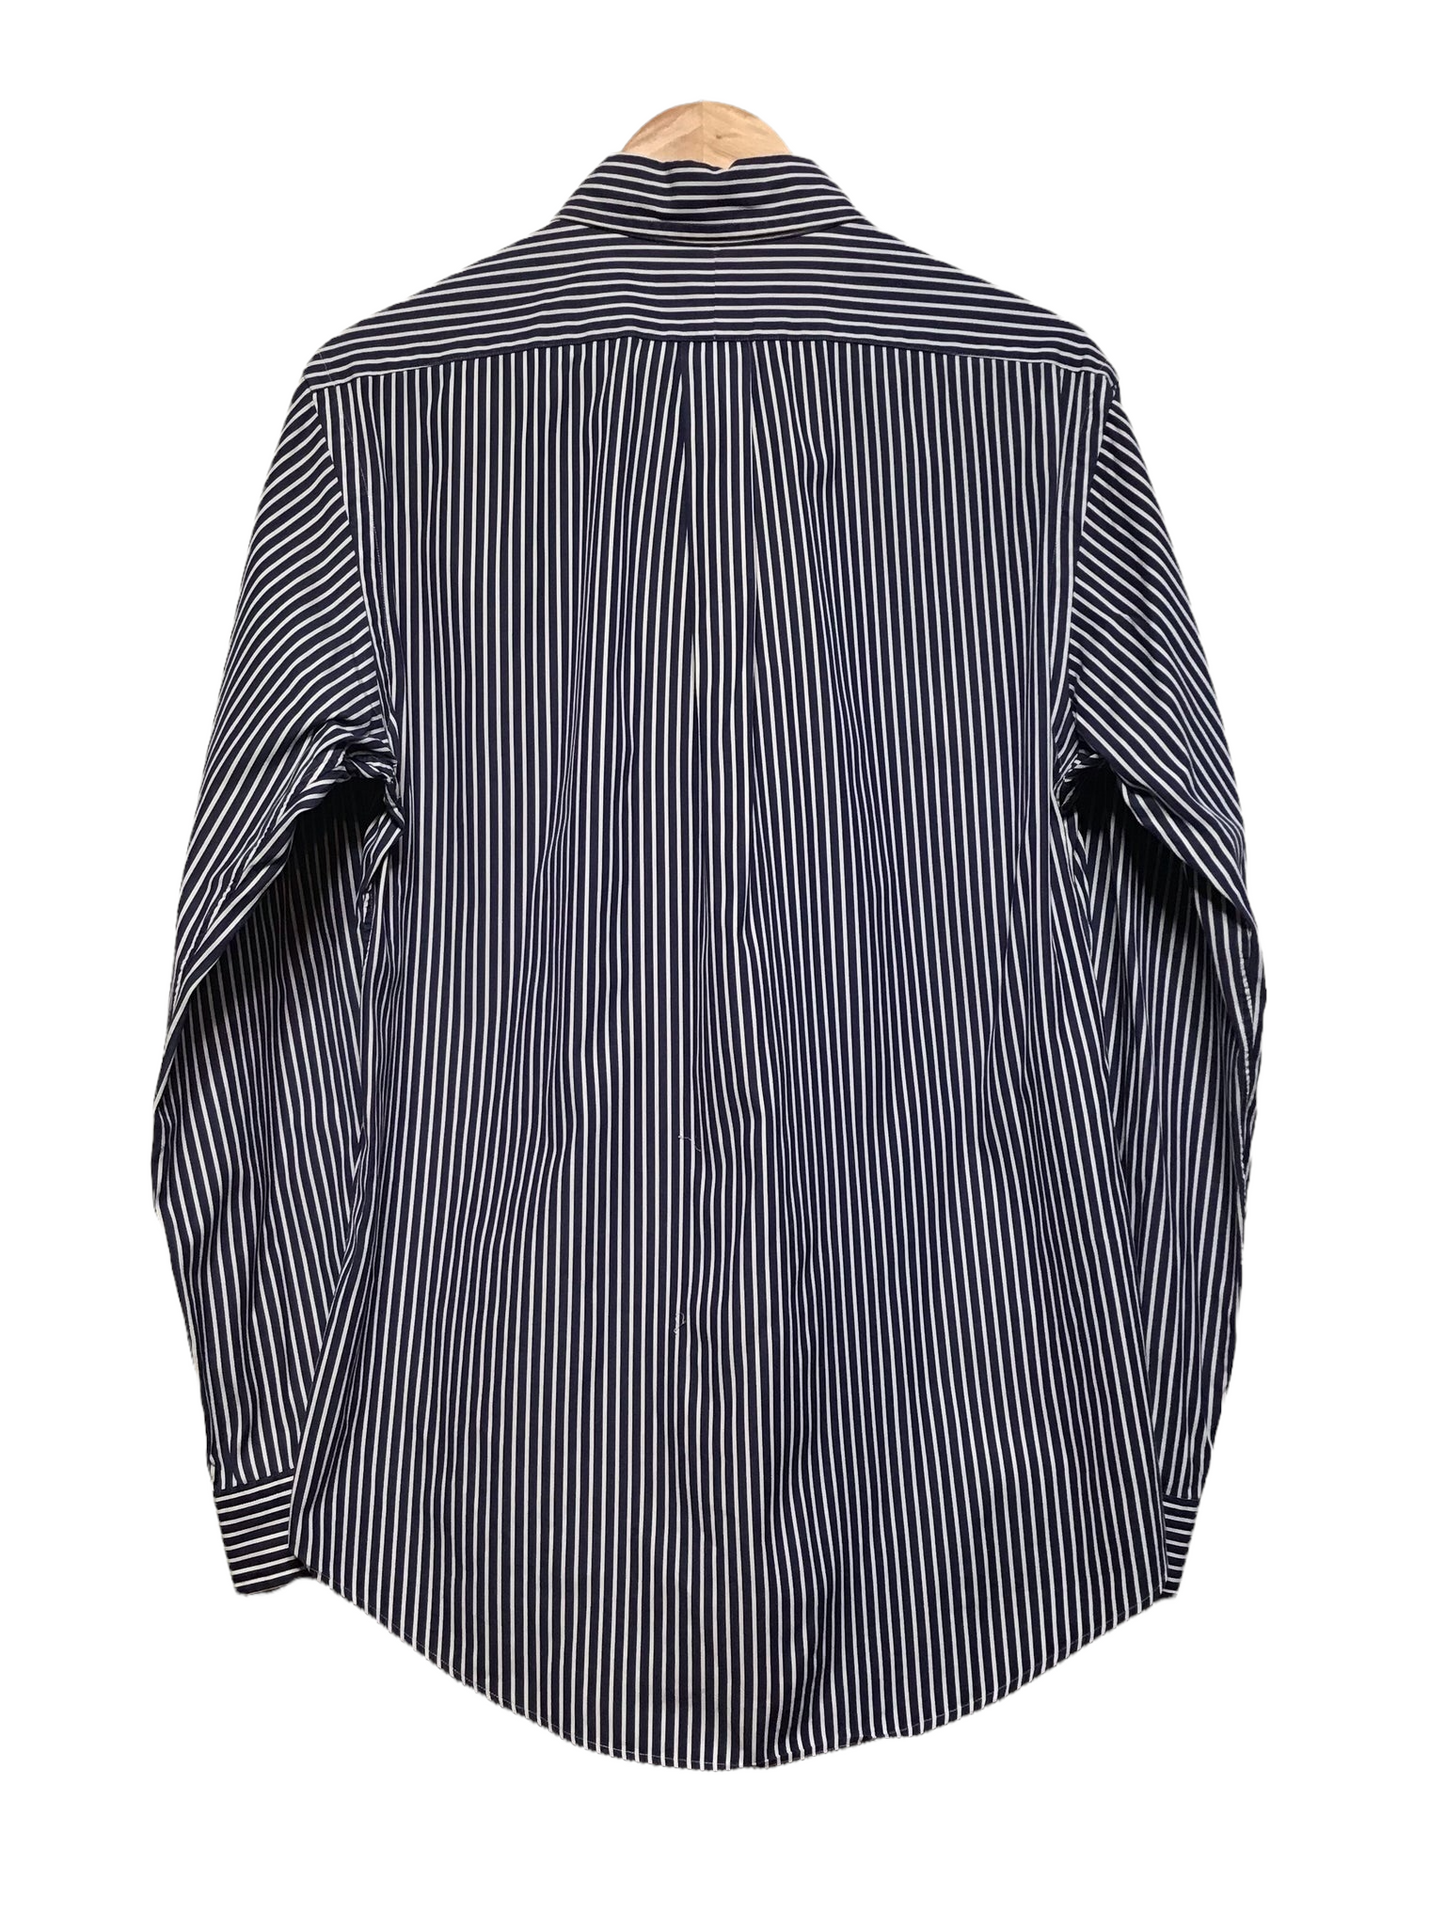 Ralph Lauren Pinstripe Shirt (Size M)